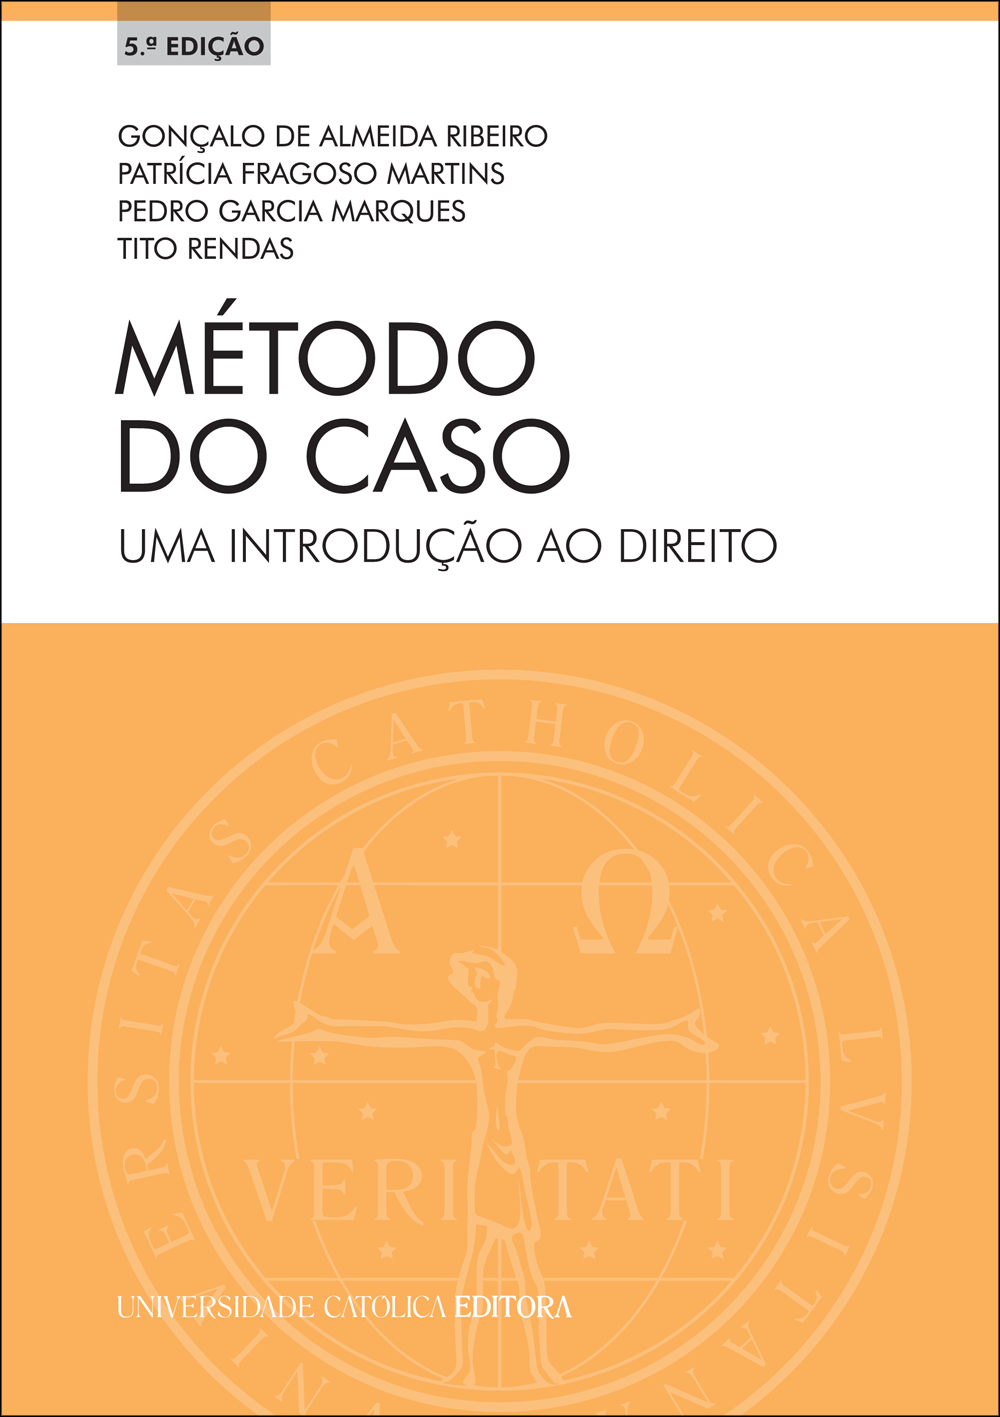 MÉTODO DO CASO - Uma Introdução ao Direito - Universidade Católica Editora